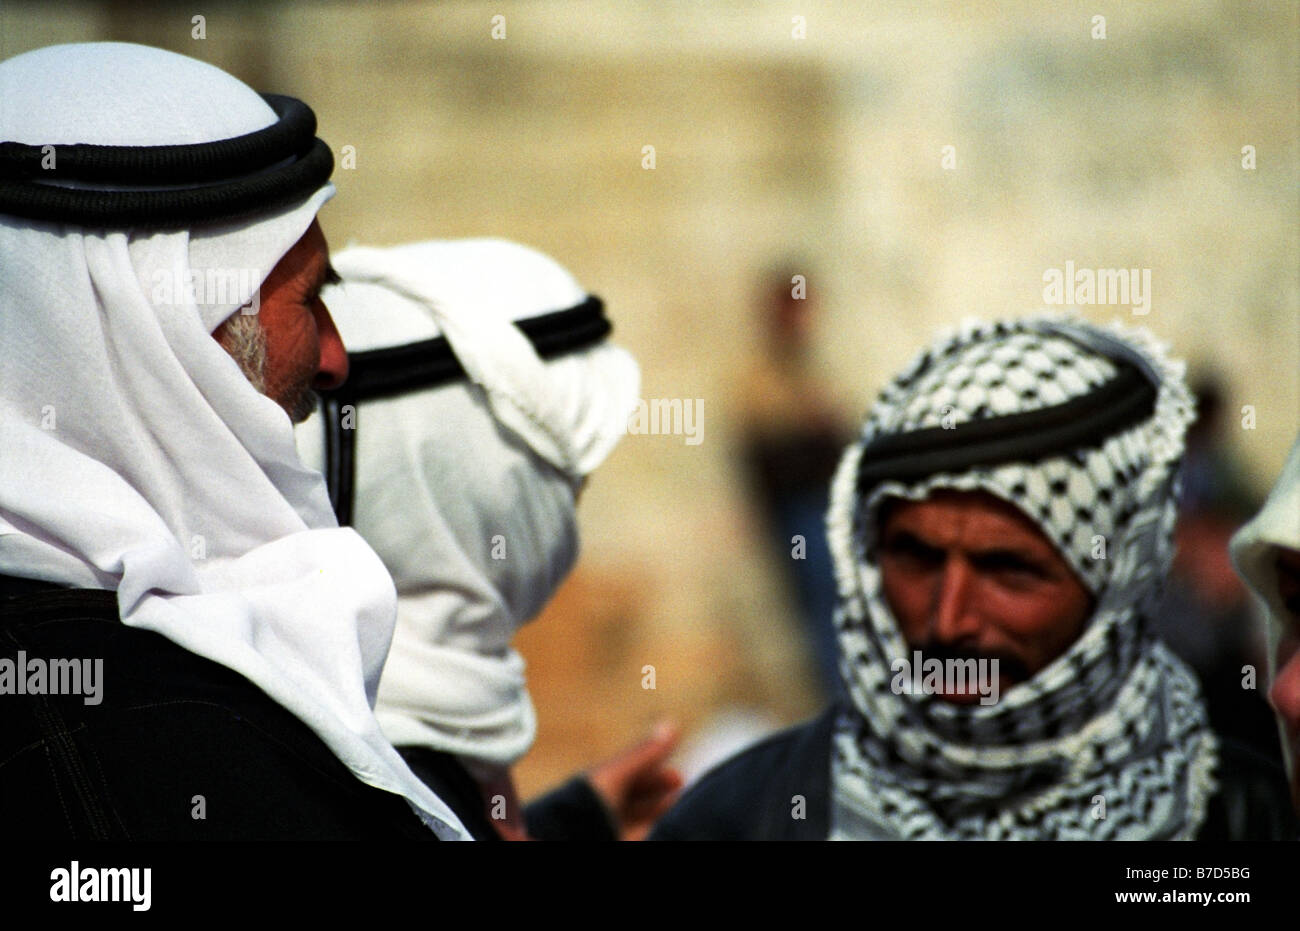 Arabische Männer tragen traditionelle Kafias - Kopfbedeckung  Stockfotografie - Alamy